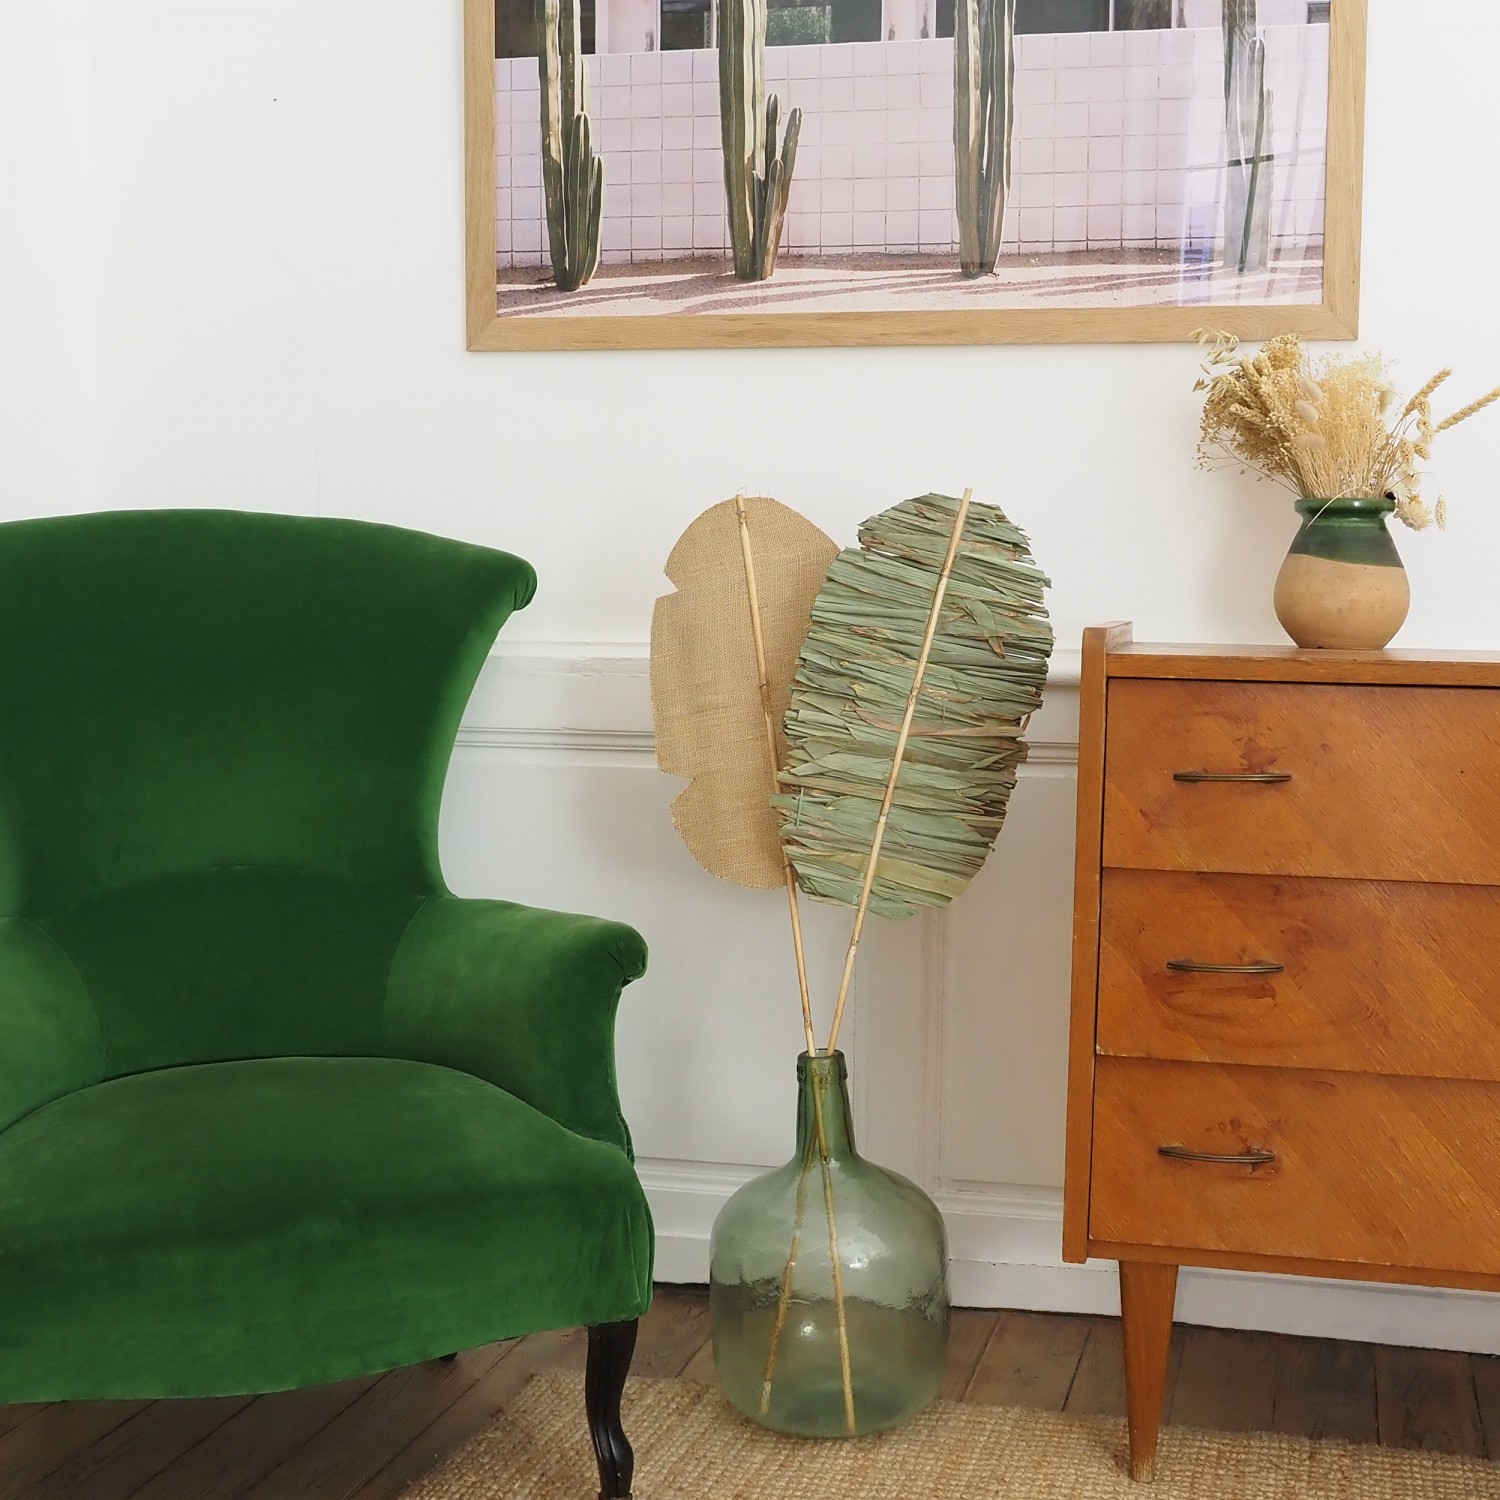 Feuille de palmier séchée indien 100cm dans un petit salon entre un fauteuil vert et une commode